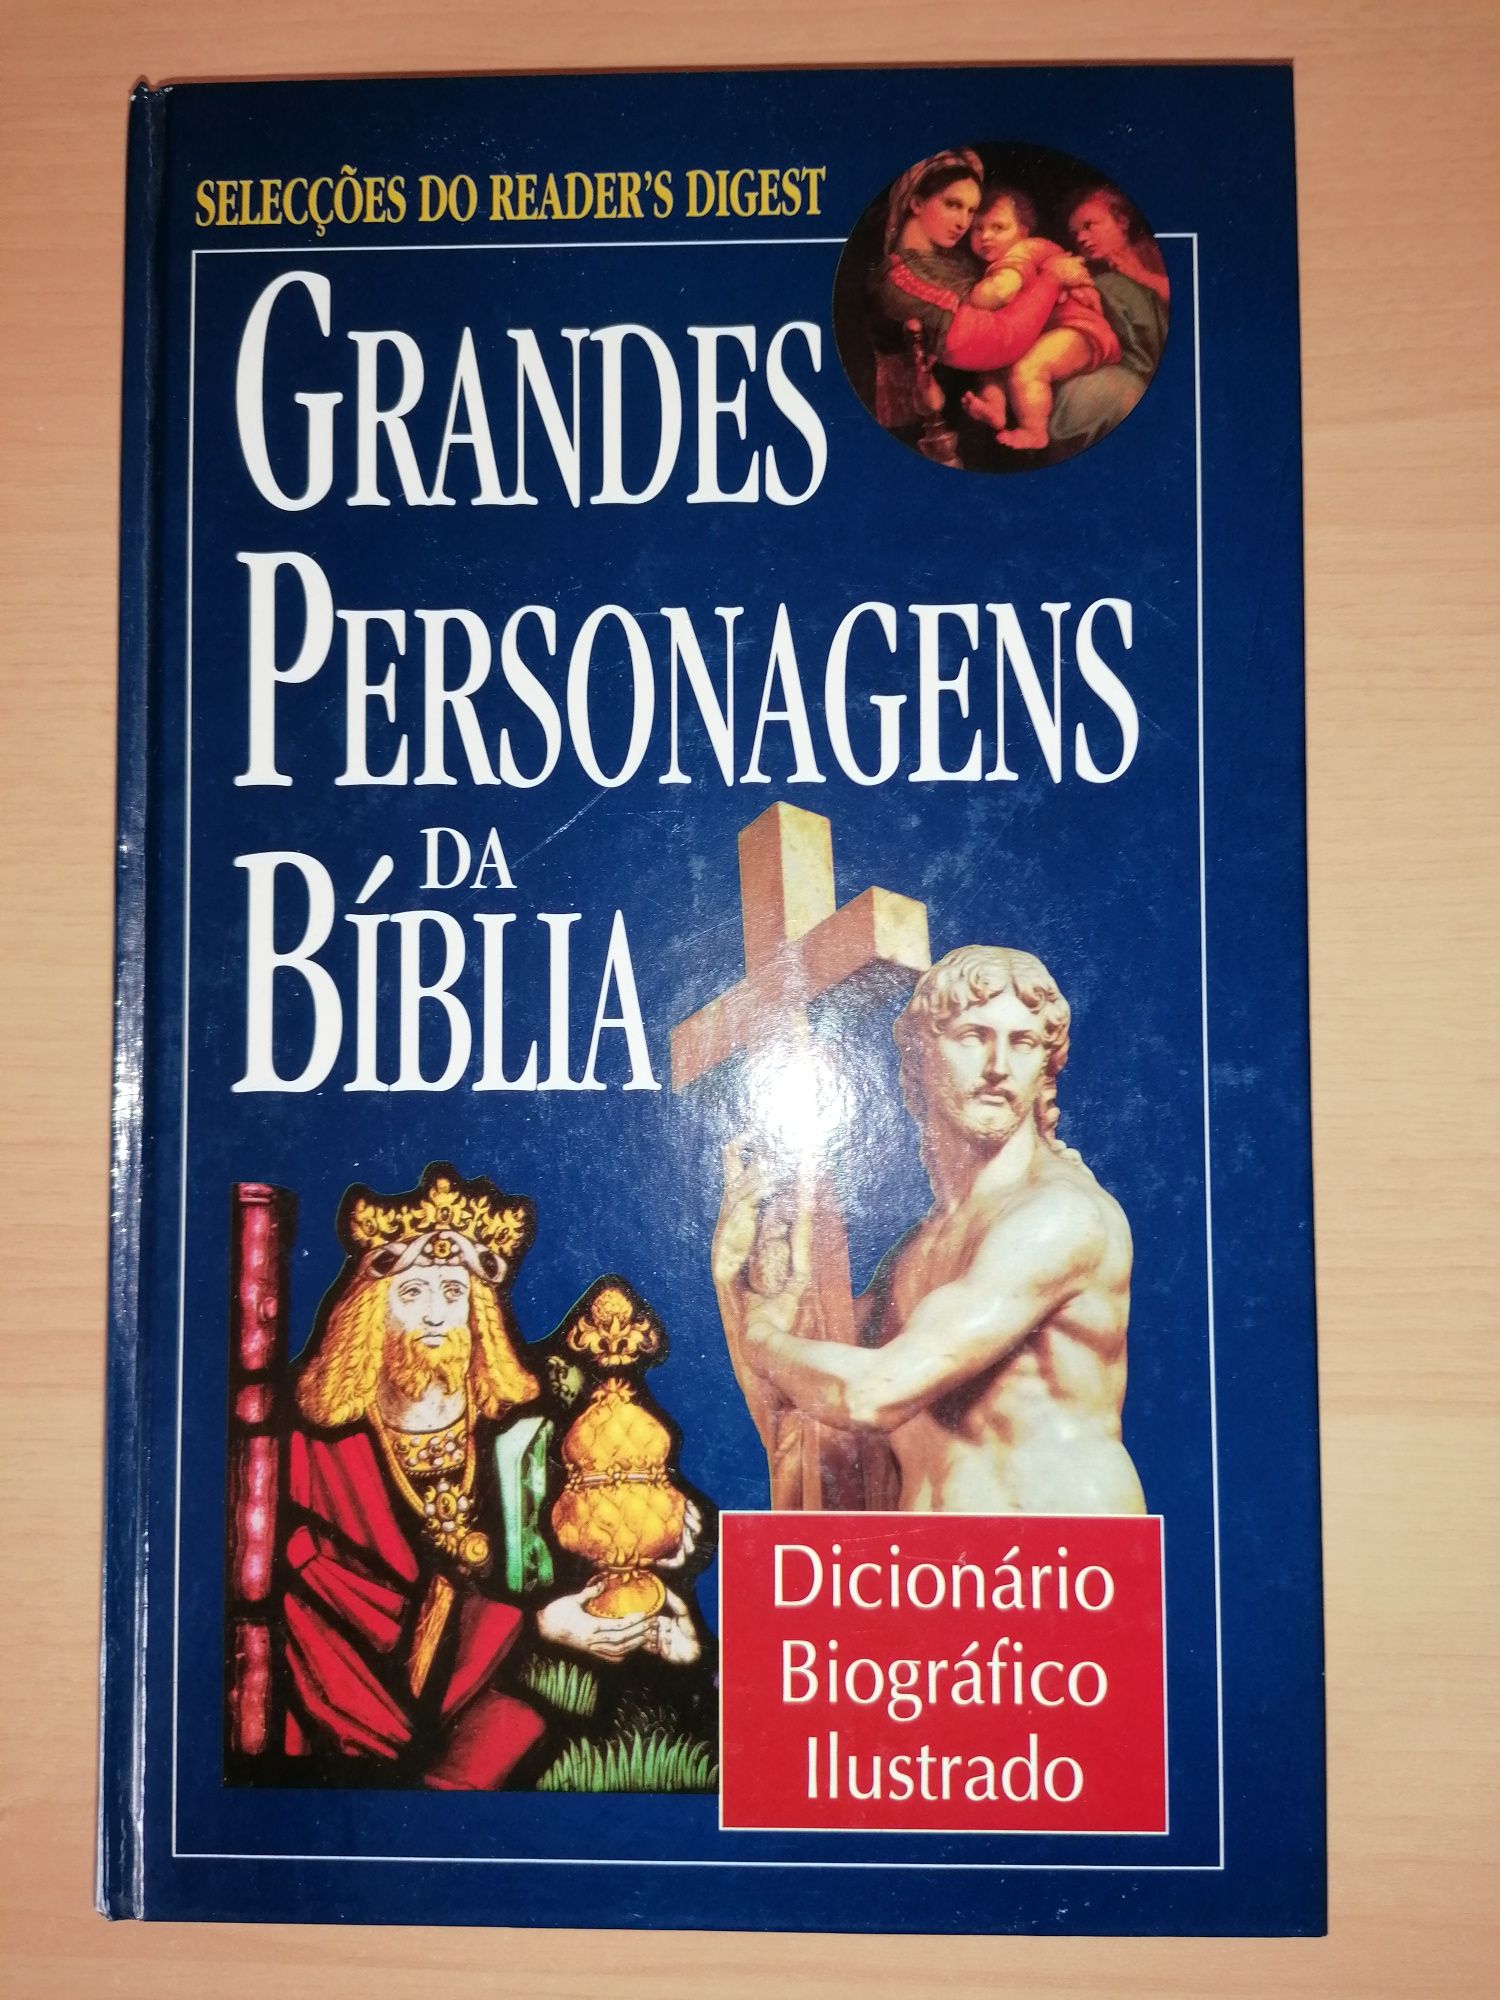 - Grandes Personágens da Bíblia - Dicionário Biográfico Ilustrado